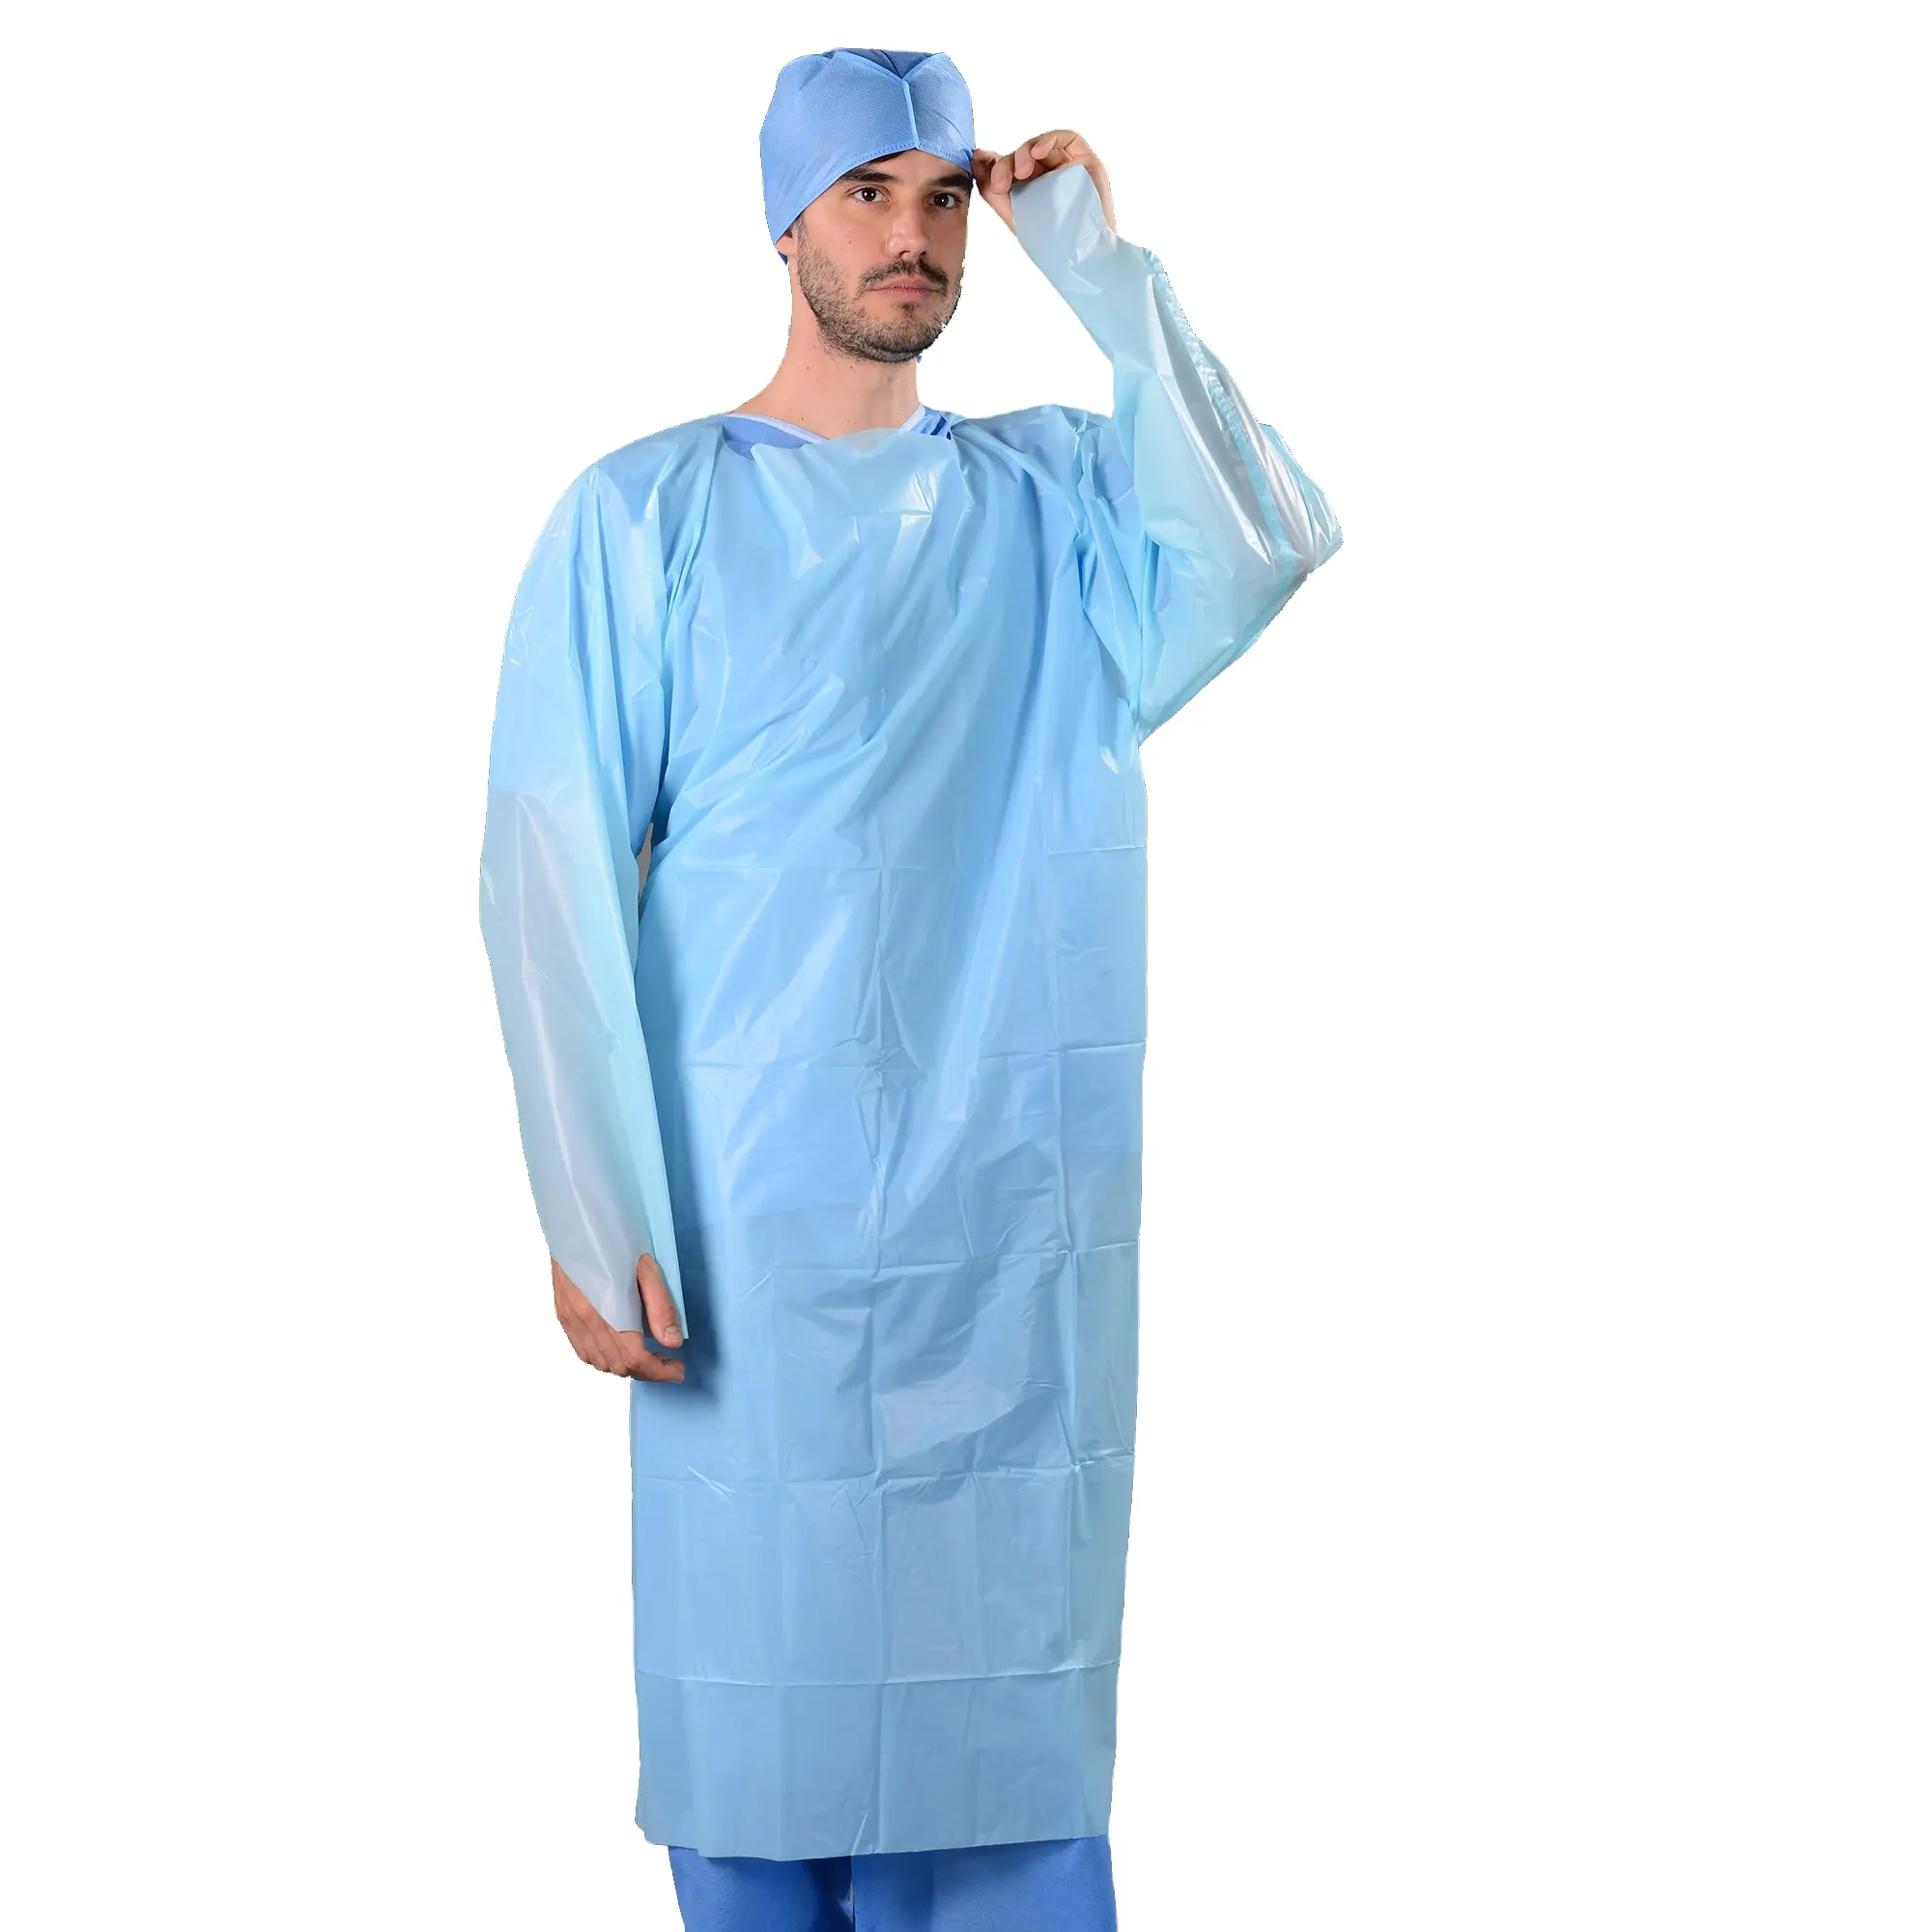 Cpe Mantel Kleid Einweg Cpe Isolation Kleid Medical Einweg Krankenhaus Cpe Kleid Ce Kunden spezifische Größe